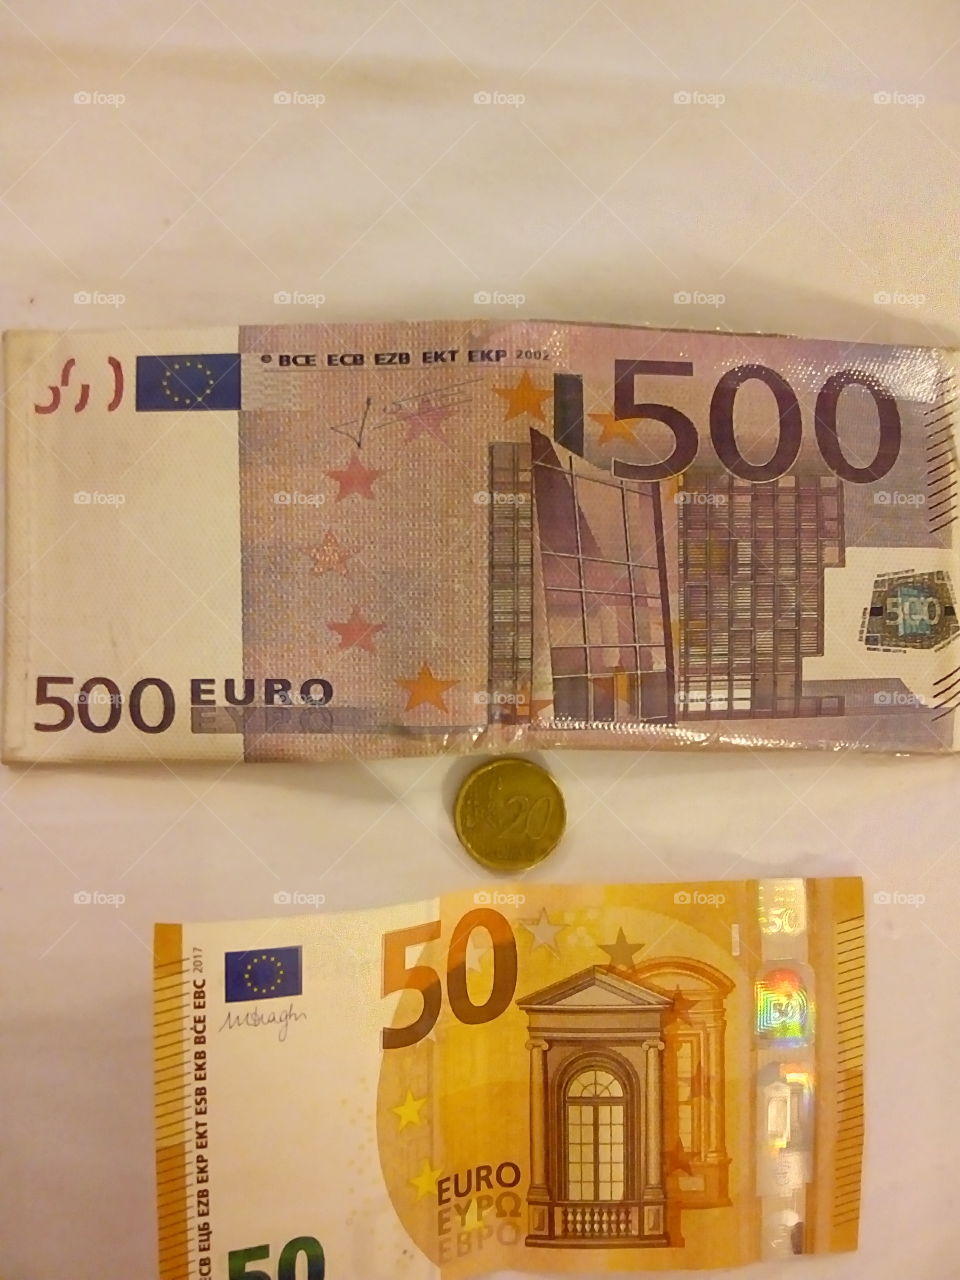 It'd be nice to have a €500 bill but by now I've got the €500 wallet.
(El billete de €50 y los €20 centro son reales). Genial sería volver a Europa pronto!